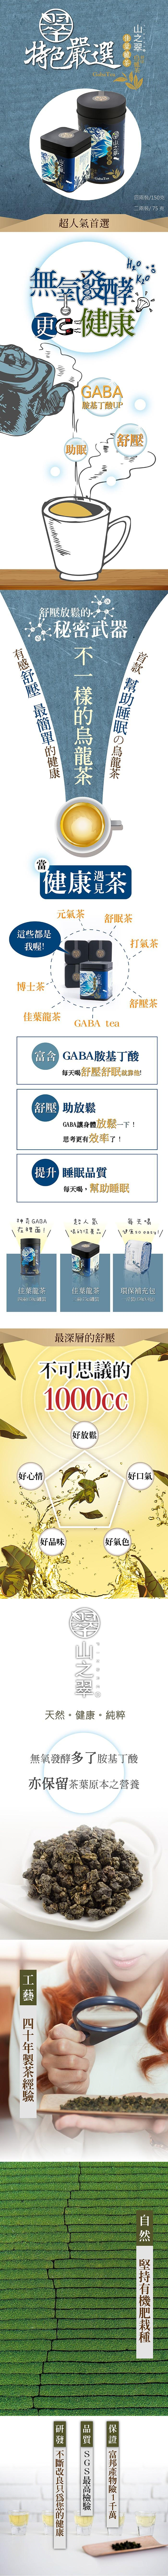 山之翠-舒眠GABA佳葉龍茶(150克)﻿產品資訊